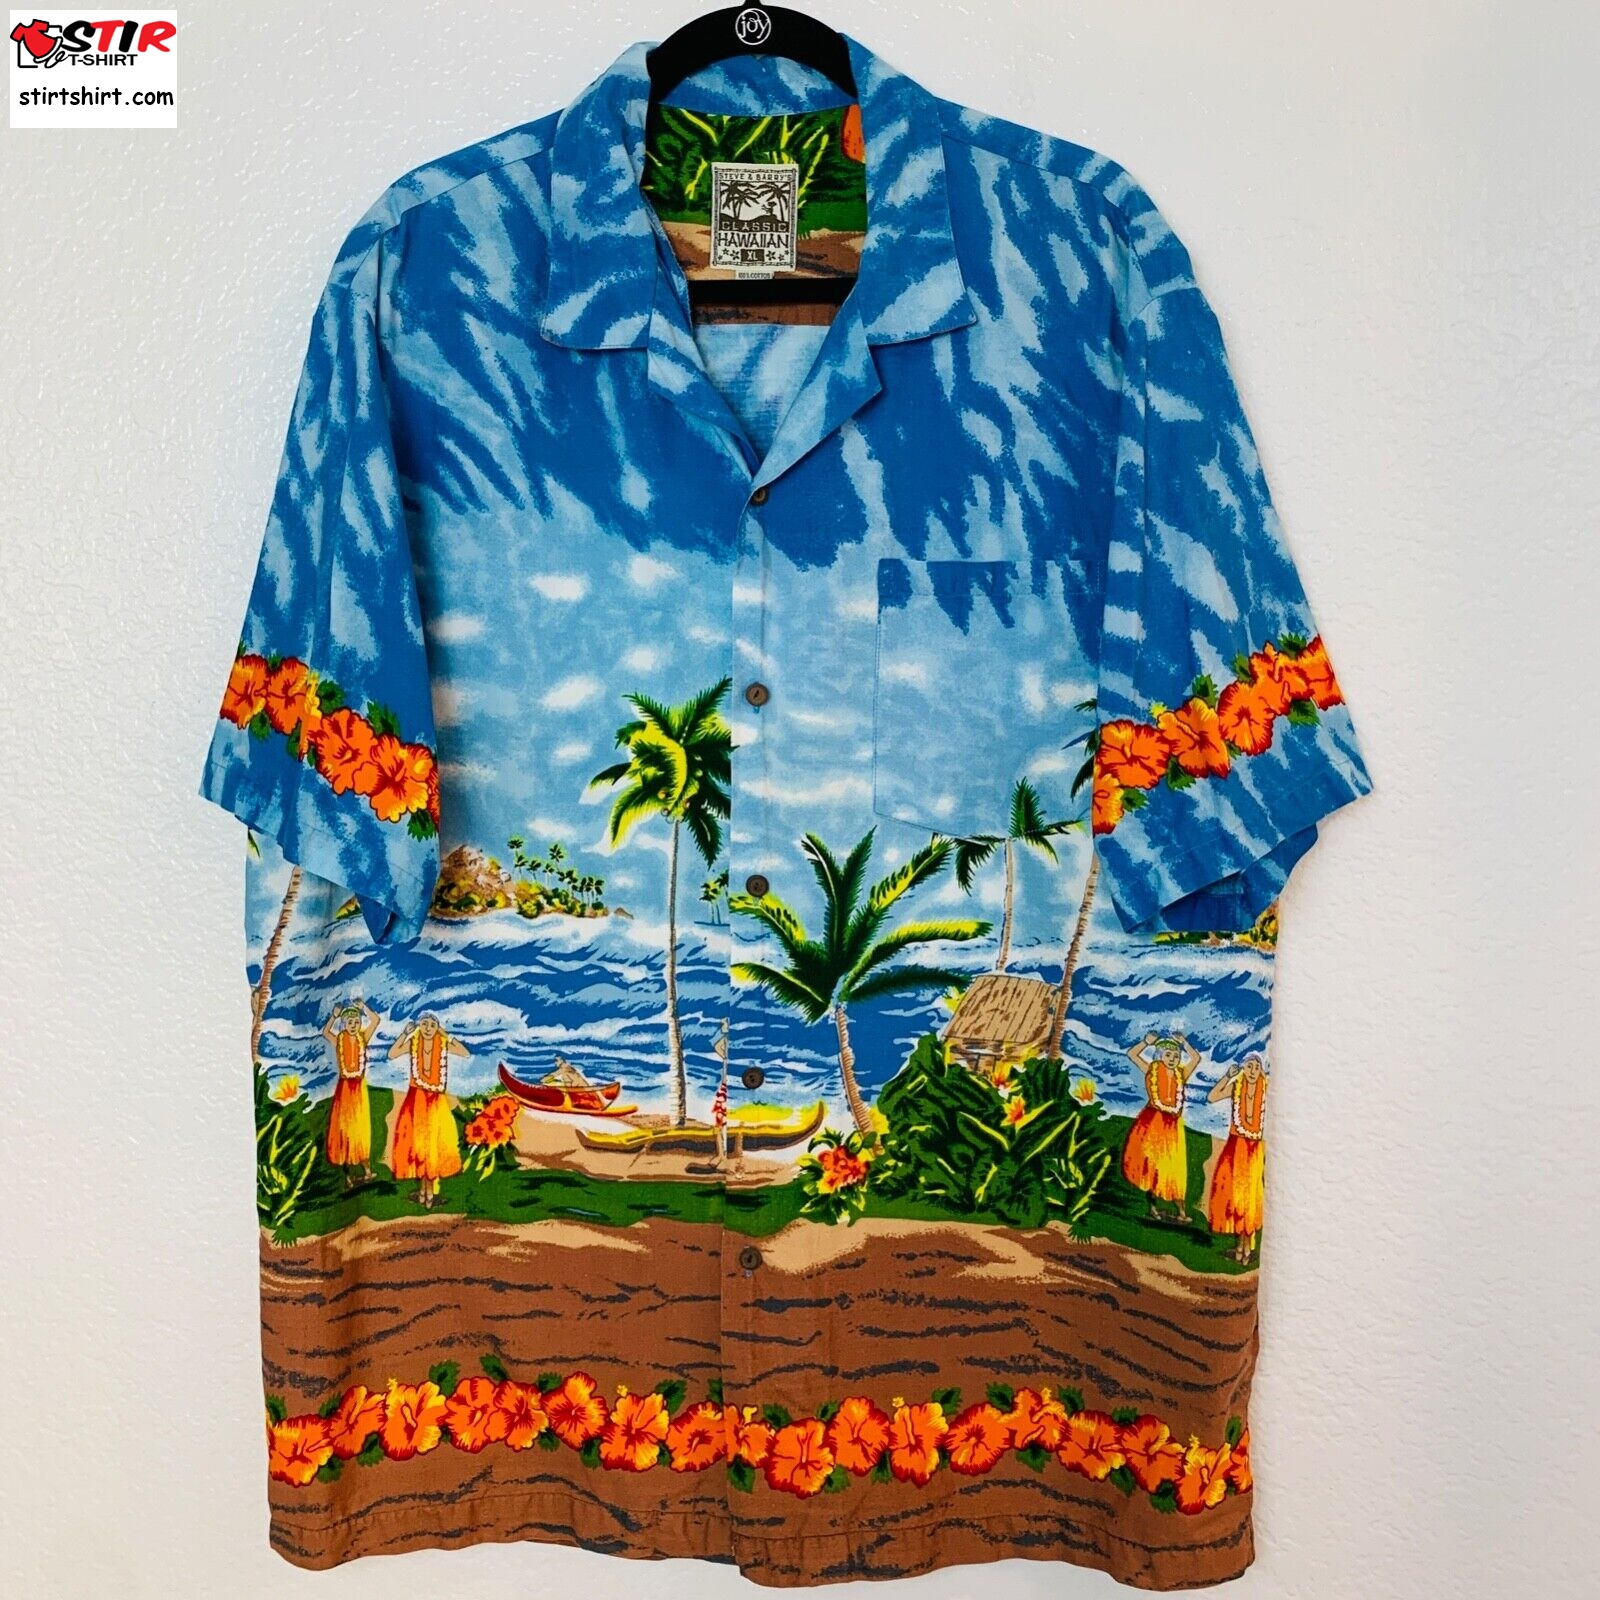 Steve _ Barry_S Classic Hawaiian Shirt Mens Xl Casual Button Up Tropical Floral  Adam Sandler 